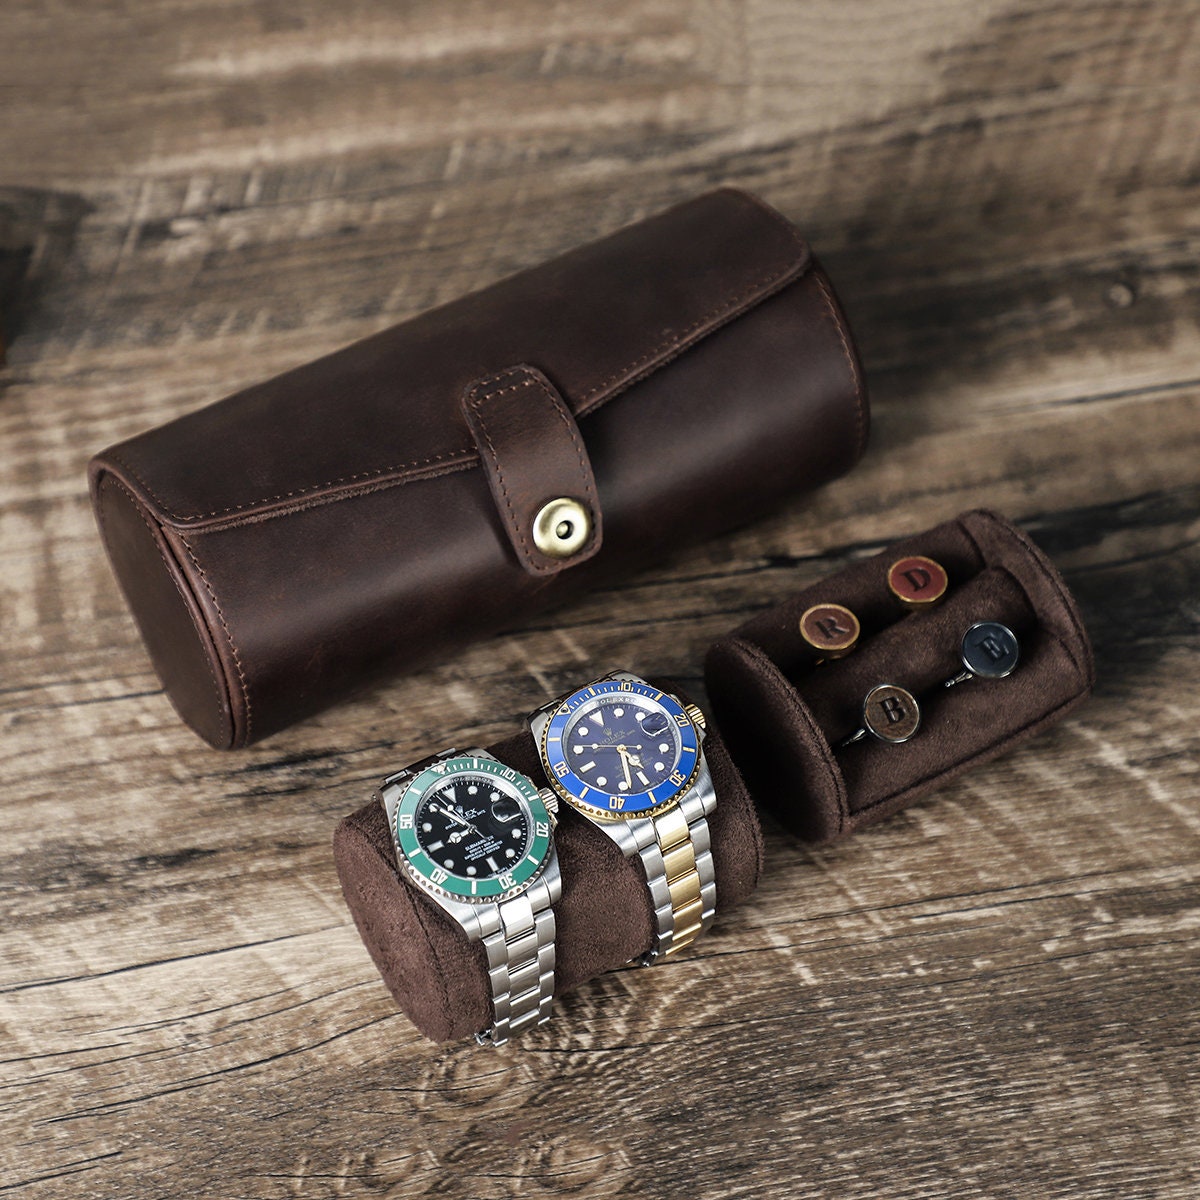 TAWBURY 3 Watch Box Organizer for Men - Cufflink and Watch Organizer | Mens Small Jewelry Box Watch Holder | Small Watch Box for Men | Watch and